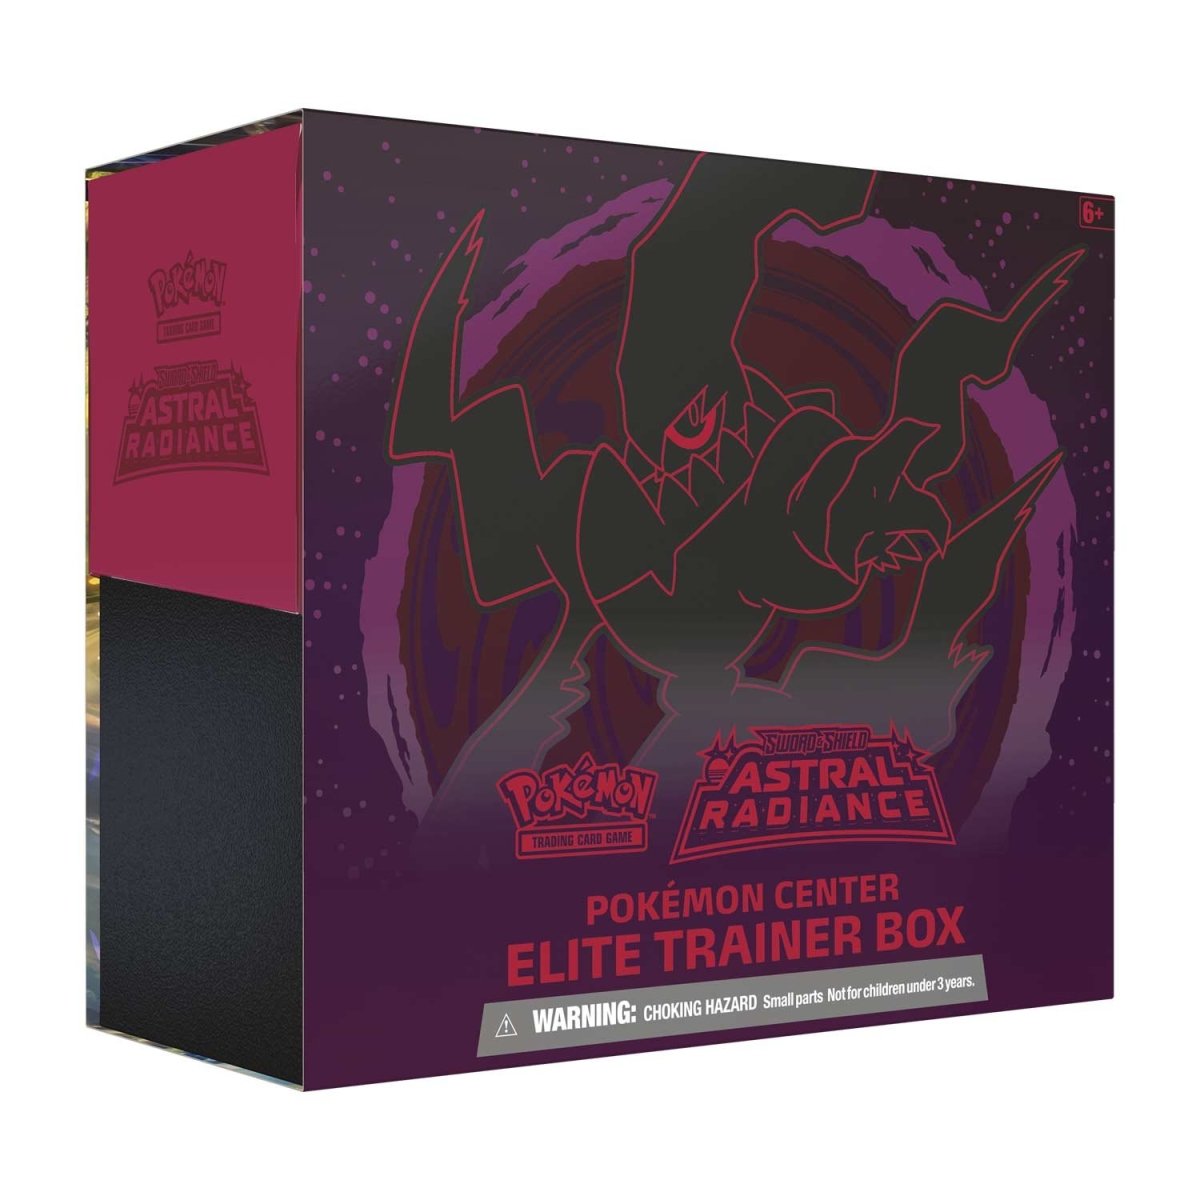 Lost Origin Pokemon Center Elite Trainer Box - TCG Code